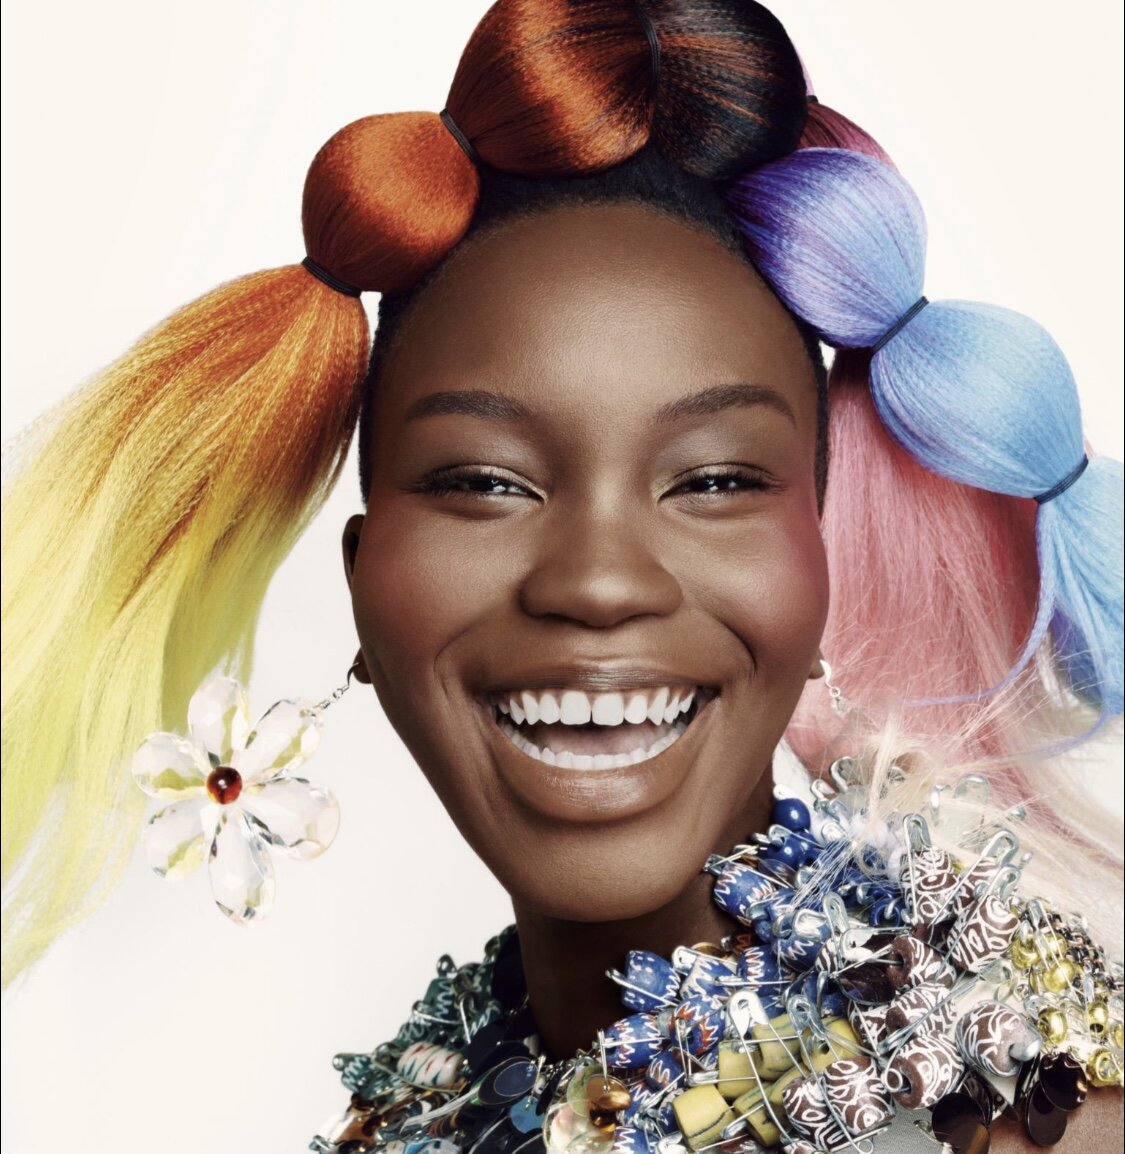 Find Your Joy by Steven Meisel Vogue UK April 2021 (10).jpg